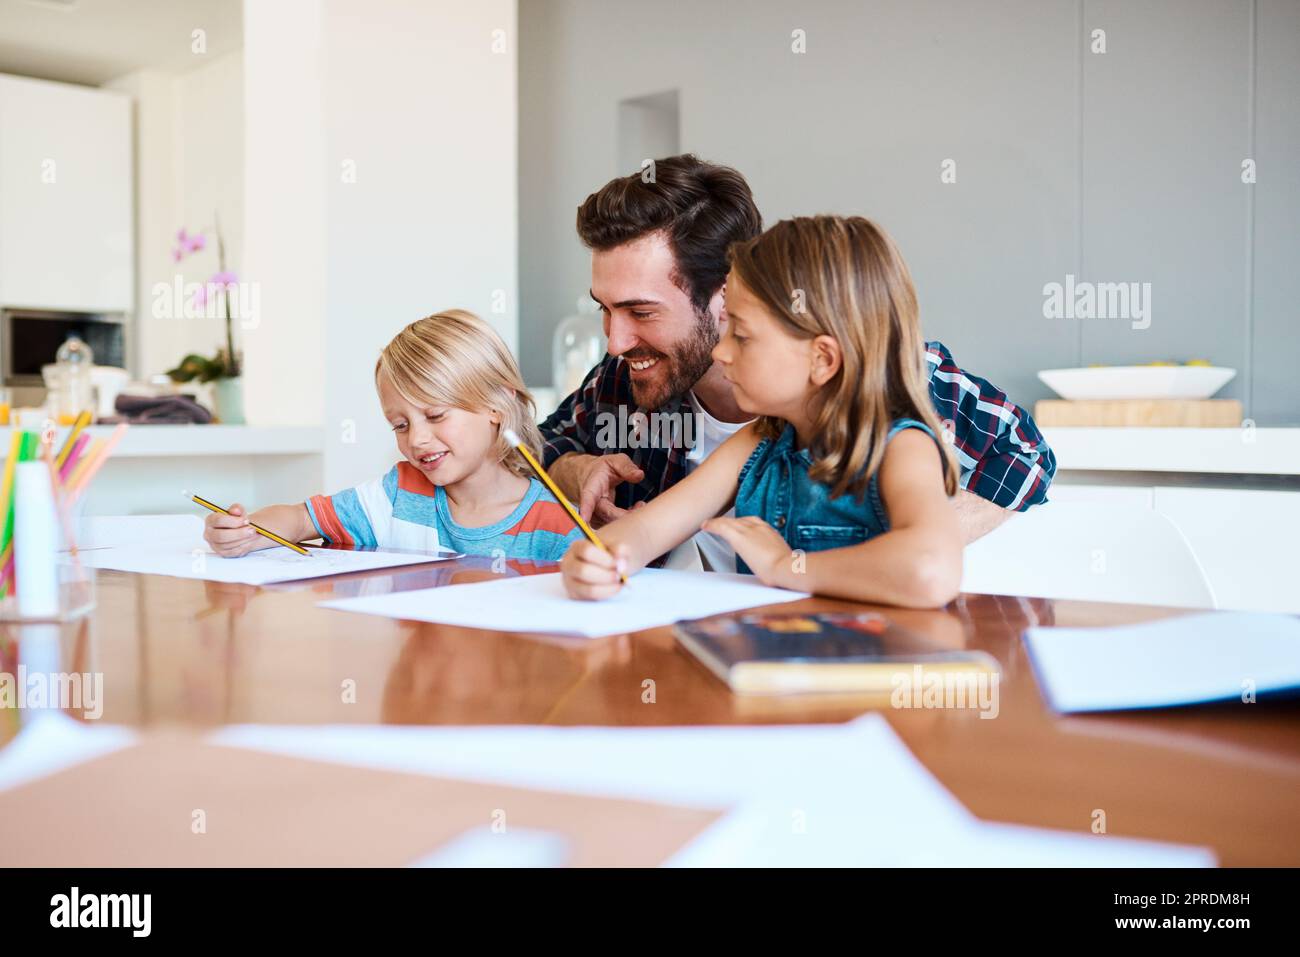 Imparare dovrebbe essere un'attività di famiglia. Un padre giovane che aiuta i suoi due bambini piccoli con i loro compiti a casa. Foto Stock